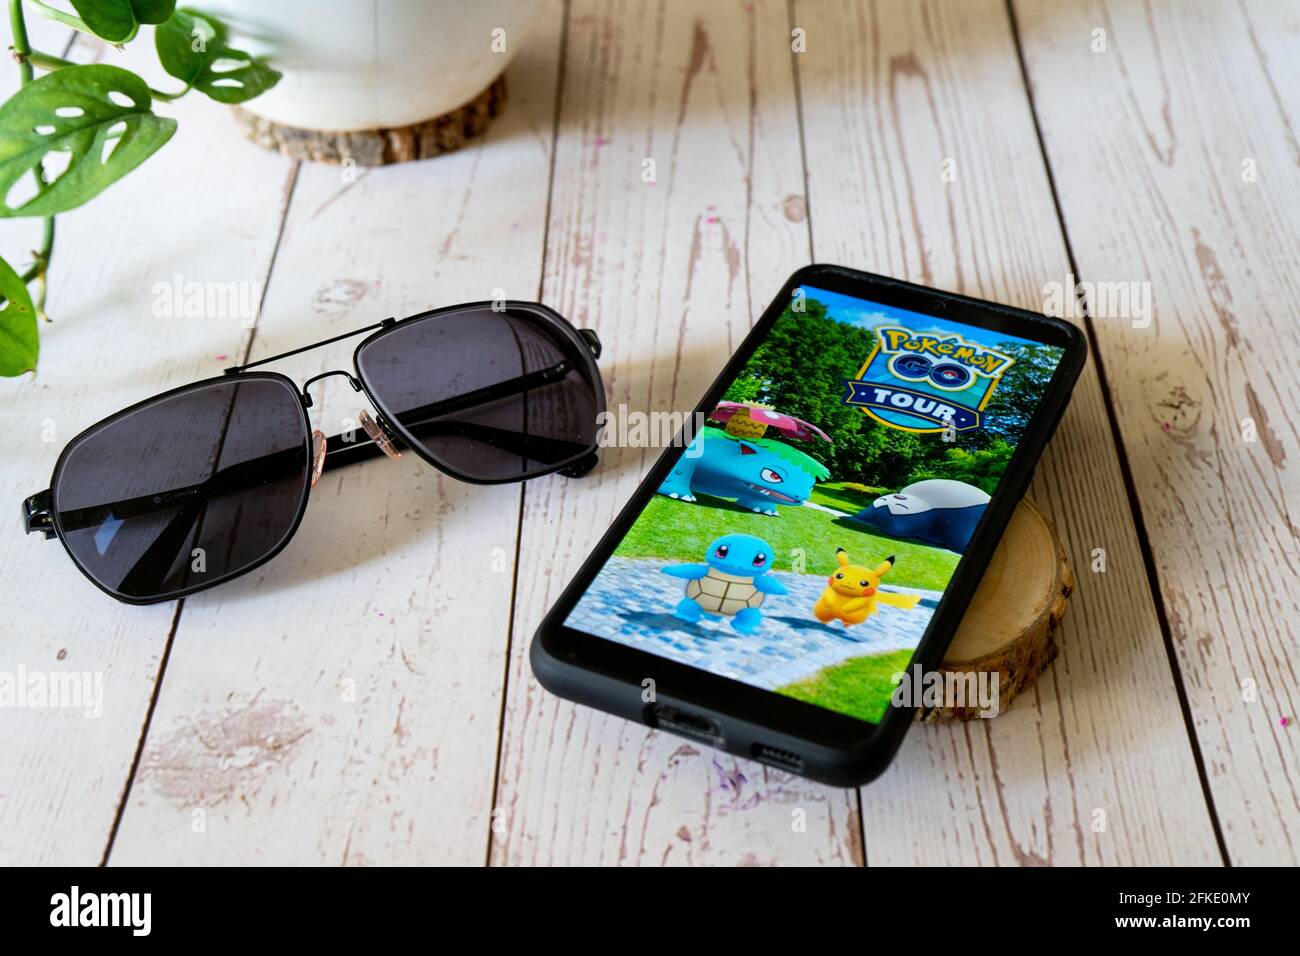 Berühmte Augmented Reality virtuelles Spiel pokemon gehen Tour spielen auf  Ein Mobiltelefon auf einem Holztisch im Freien mit Pflanzen Brillen, die  den Menschen Freude machen Stockfotografie - Alamy